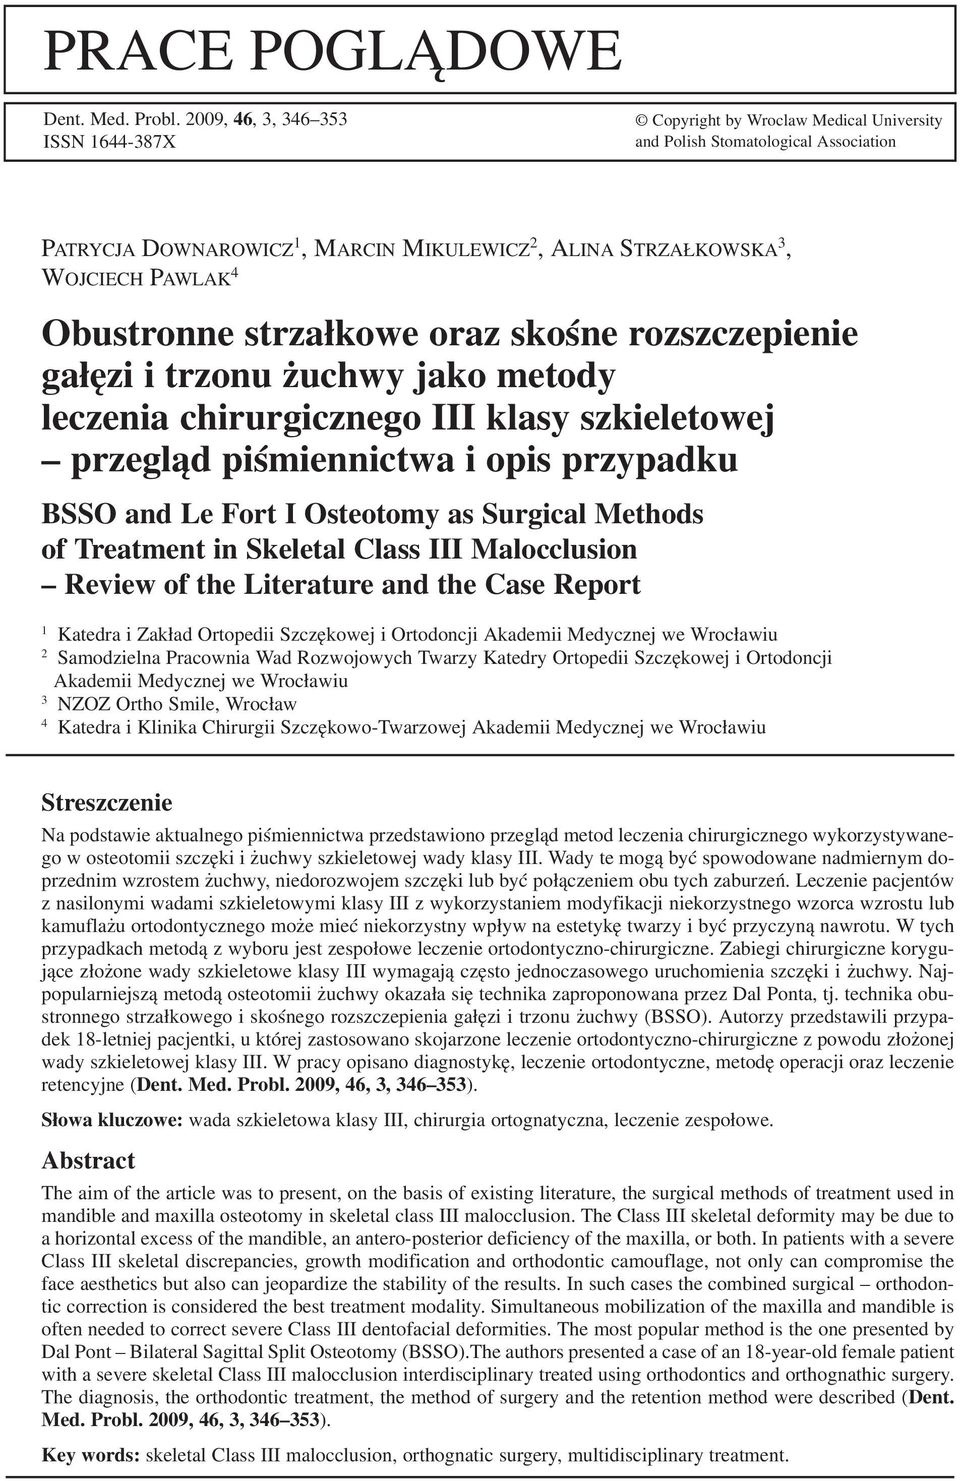 Obustronne strzałkowe oraz skośne rozszczepienie gałęzi i trzonu żuchwy jako metody leczenia chirurgicznego III klasy szkieletowej przegląd piśmiennictwa i opis przypadku BSSO and Le Fort I Osteotomy